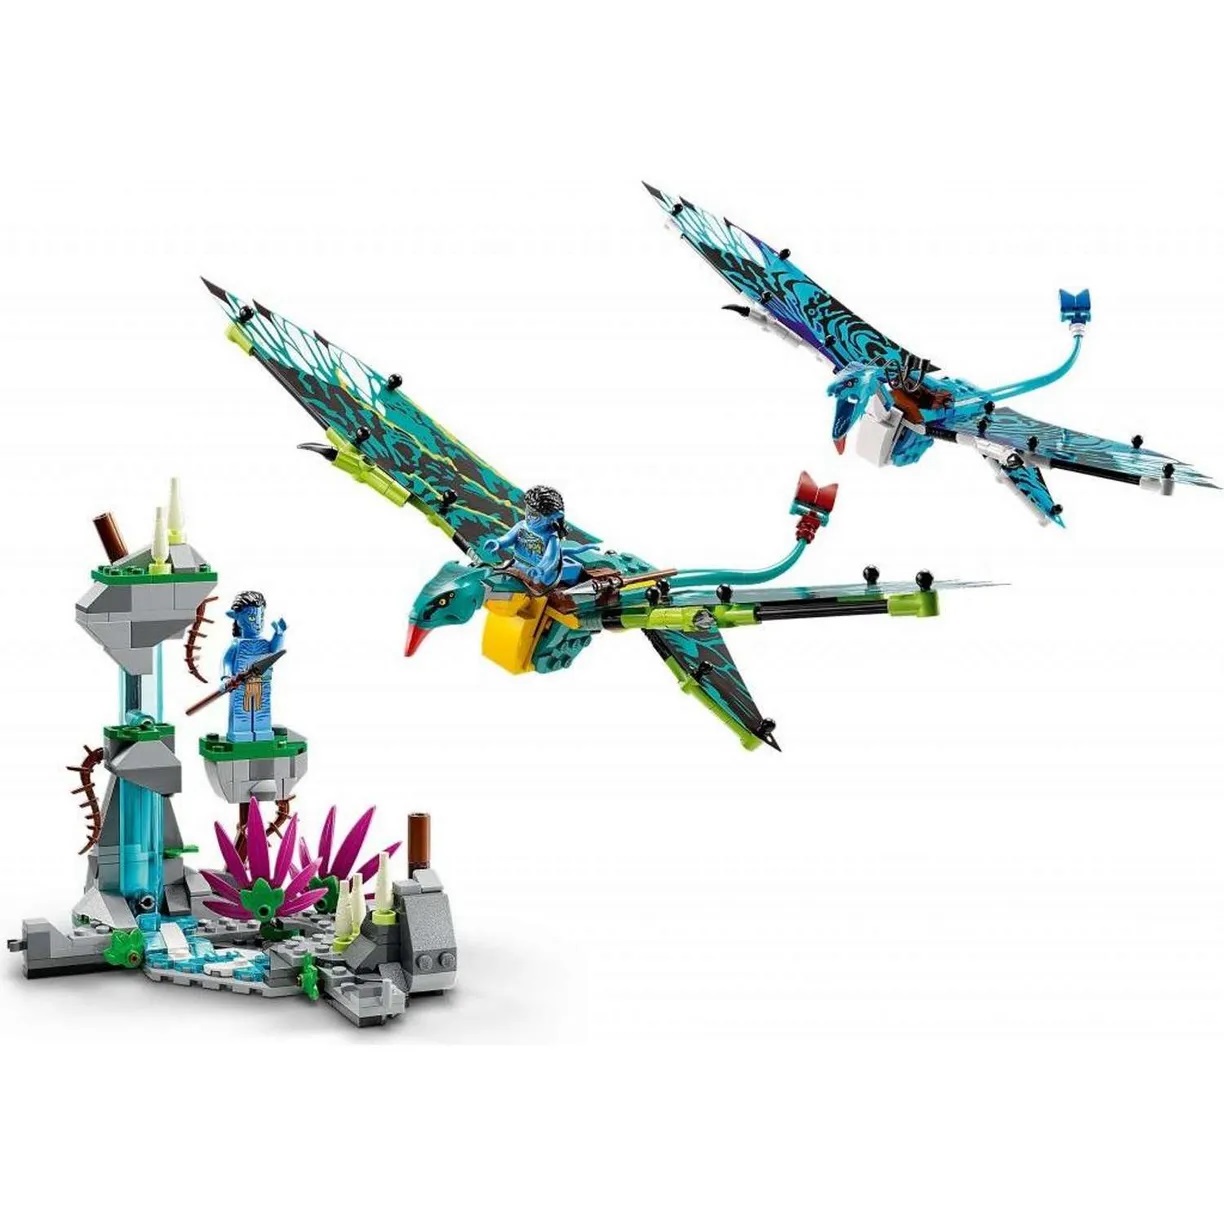 Lego Avatar 75572 Джейк и Нейтири: первый полет на Банши